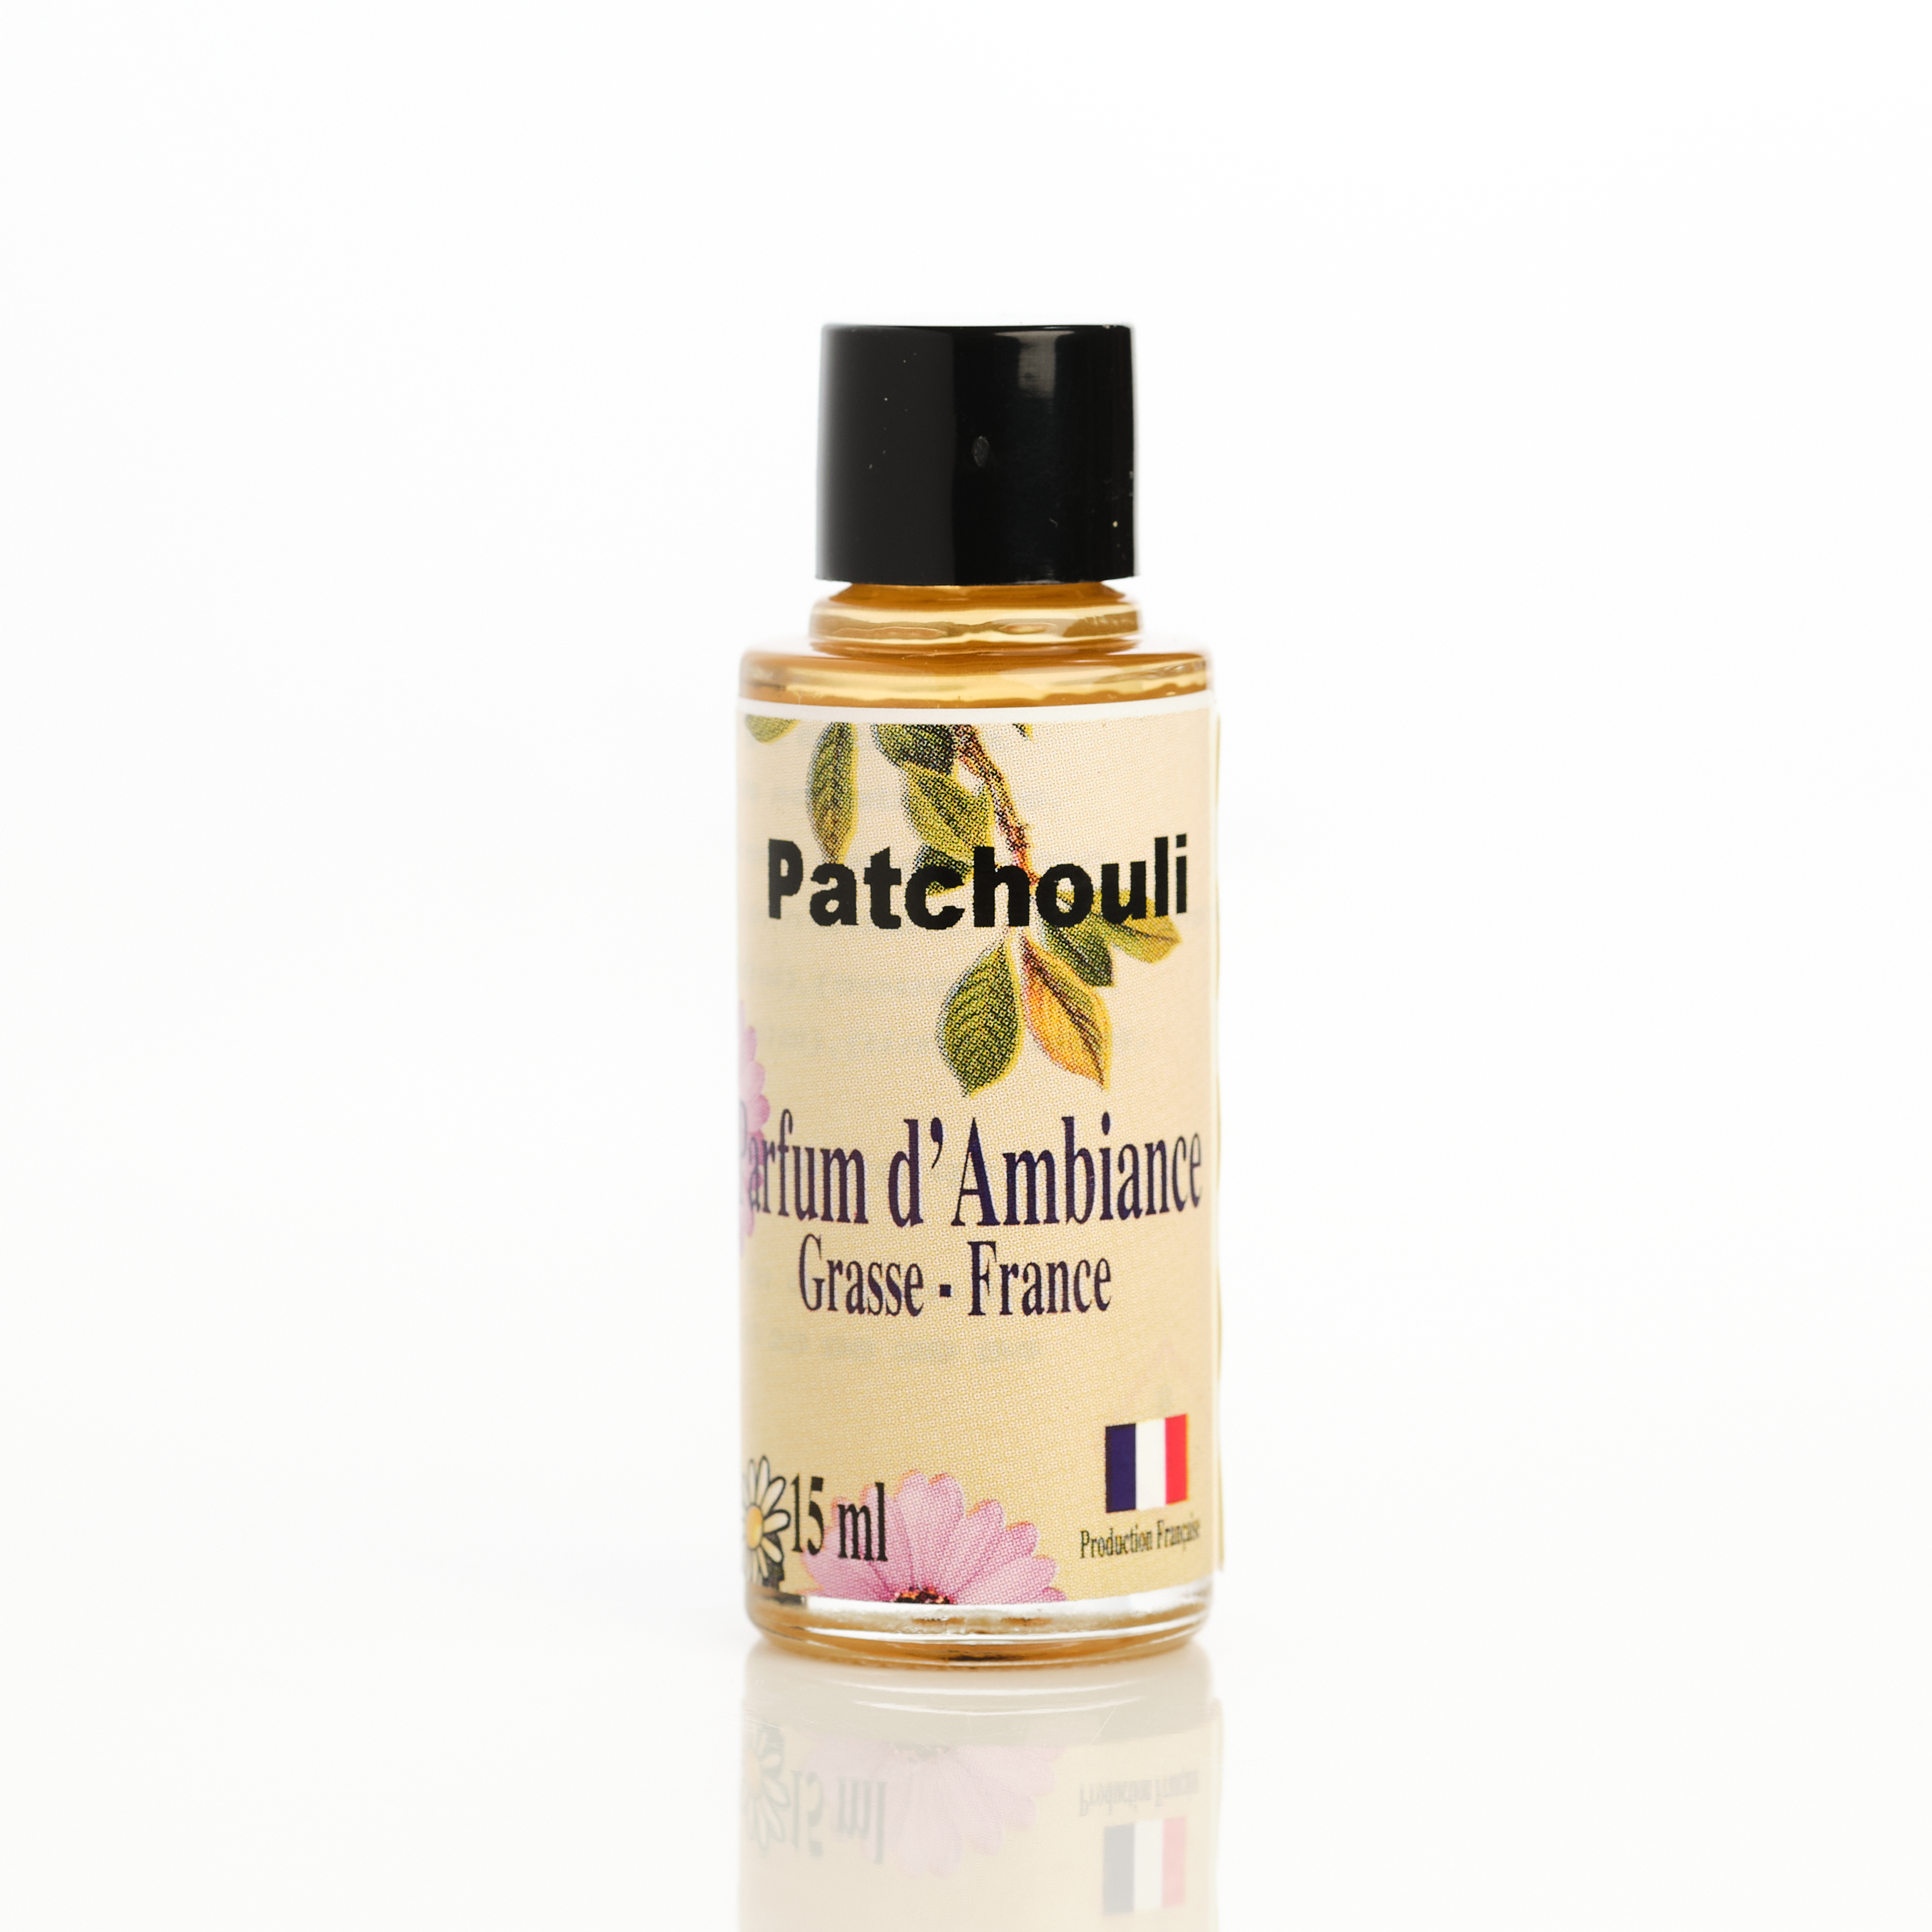 achat concentré parfum d'ambiance Grasse patchouli pour parfumer la maison odeur maison fraîche